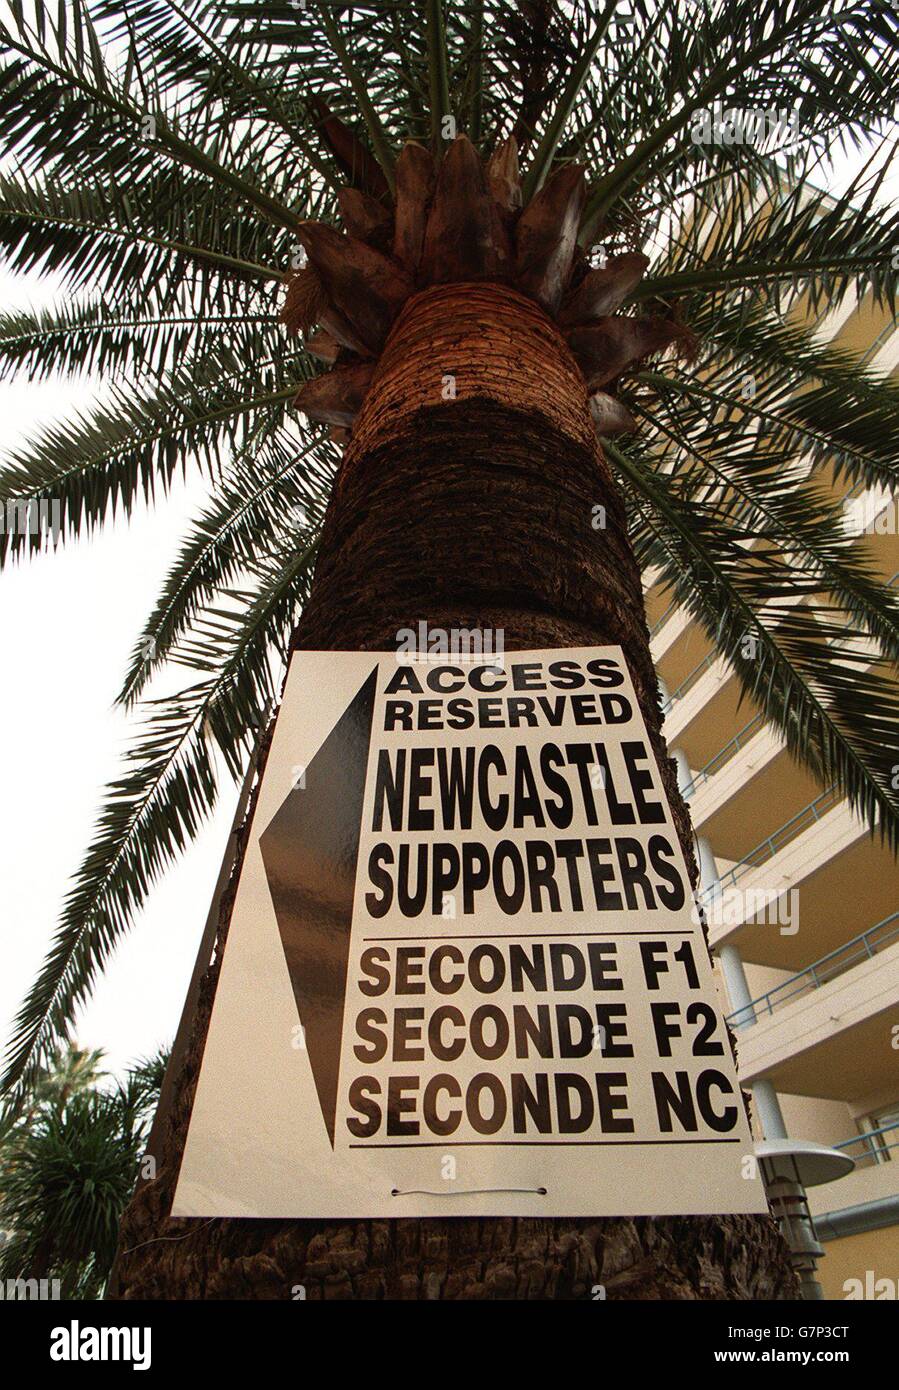 FUSSBALL - UEFA CUP VIERTELFINALE - AS Monaco / Newcastle United. Fans von Newcastle United unterschreiben auf einem Psalmbaum in Monaco Stockfoto